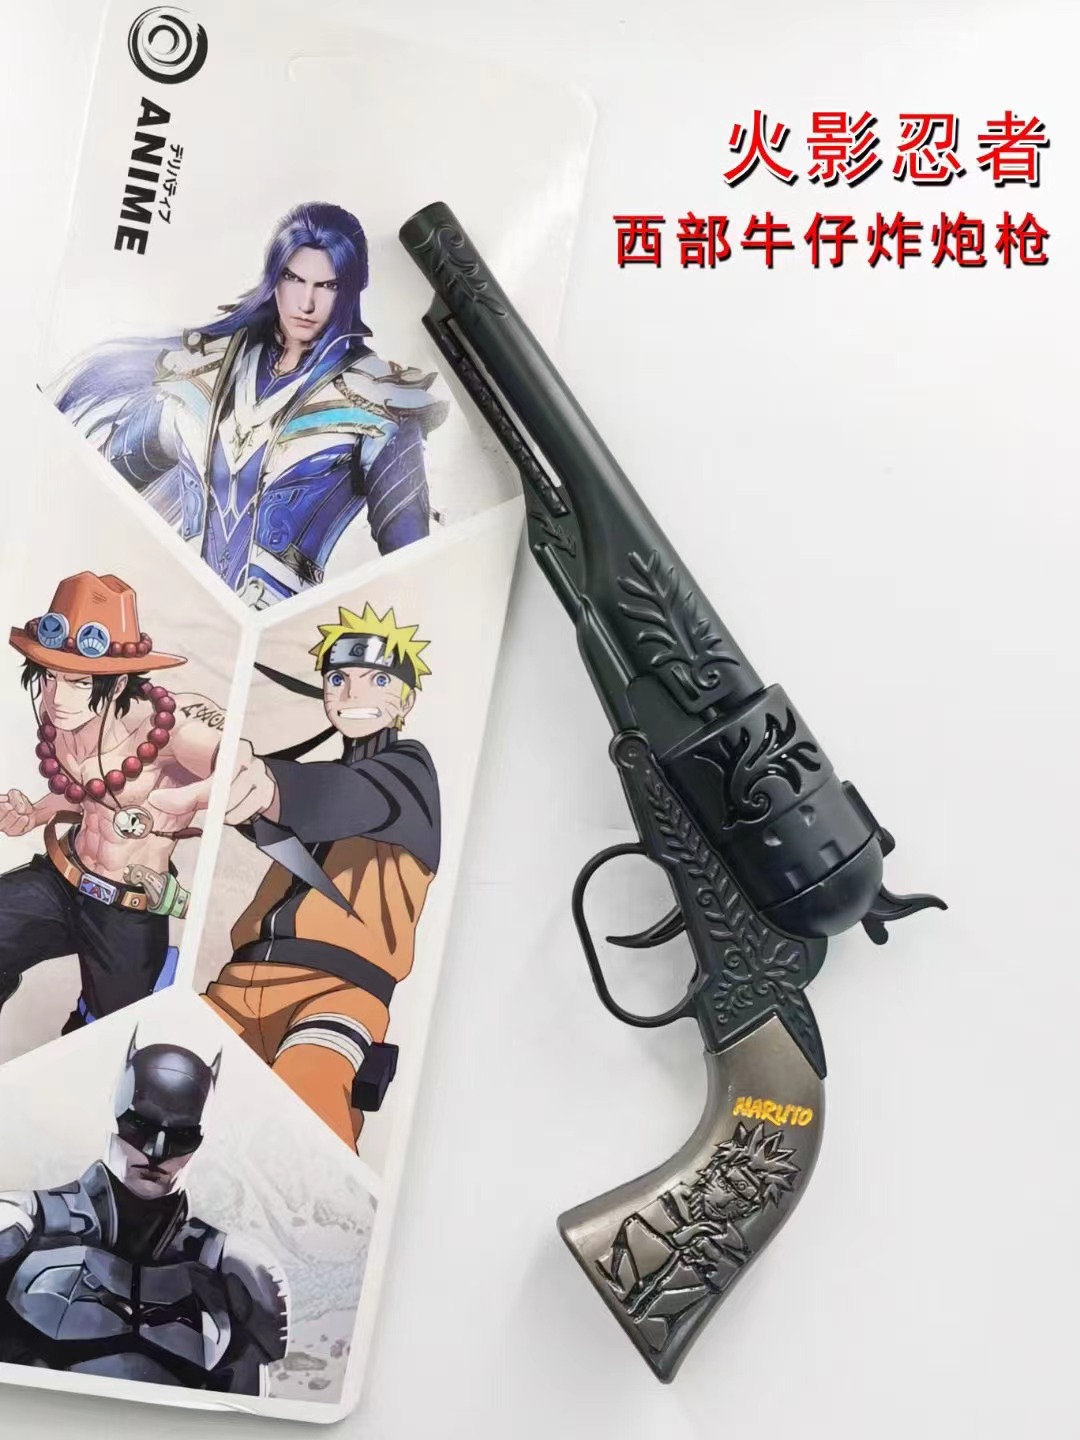 Naruto anime cowboy smashing gun toy